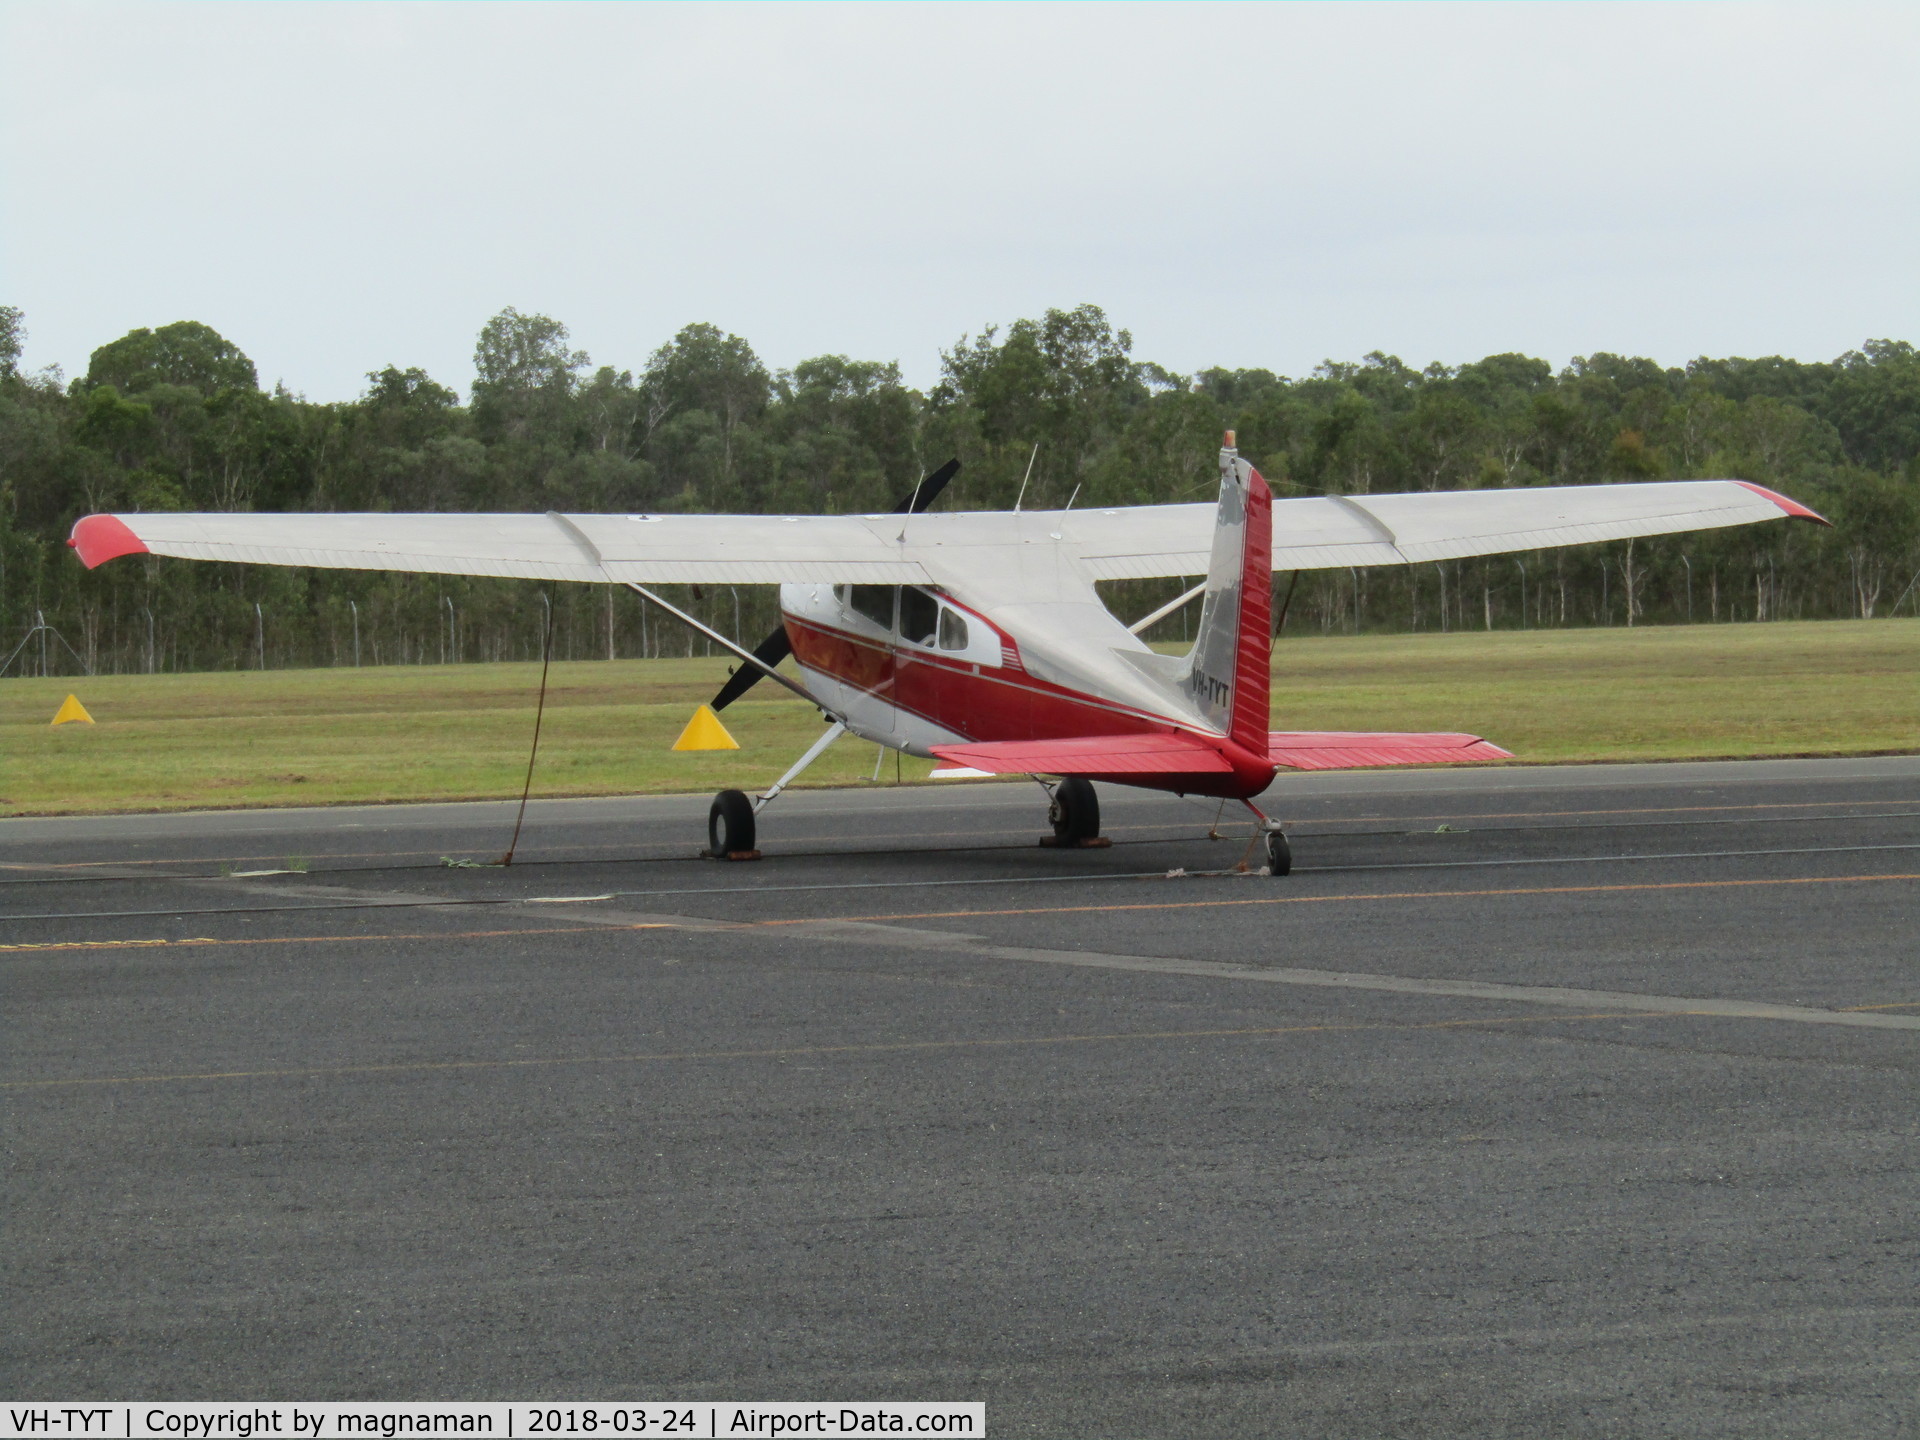 VH-TYT, Cessna 180H Skywagon C/N 180-51679, on ramp at Caloundra